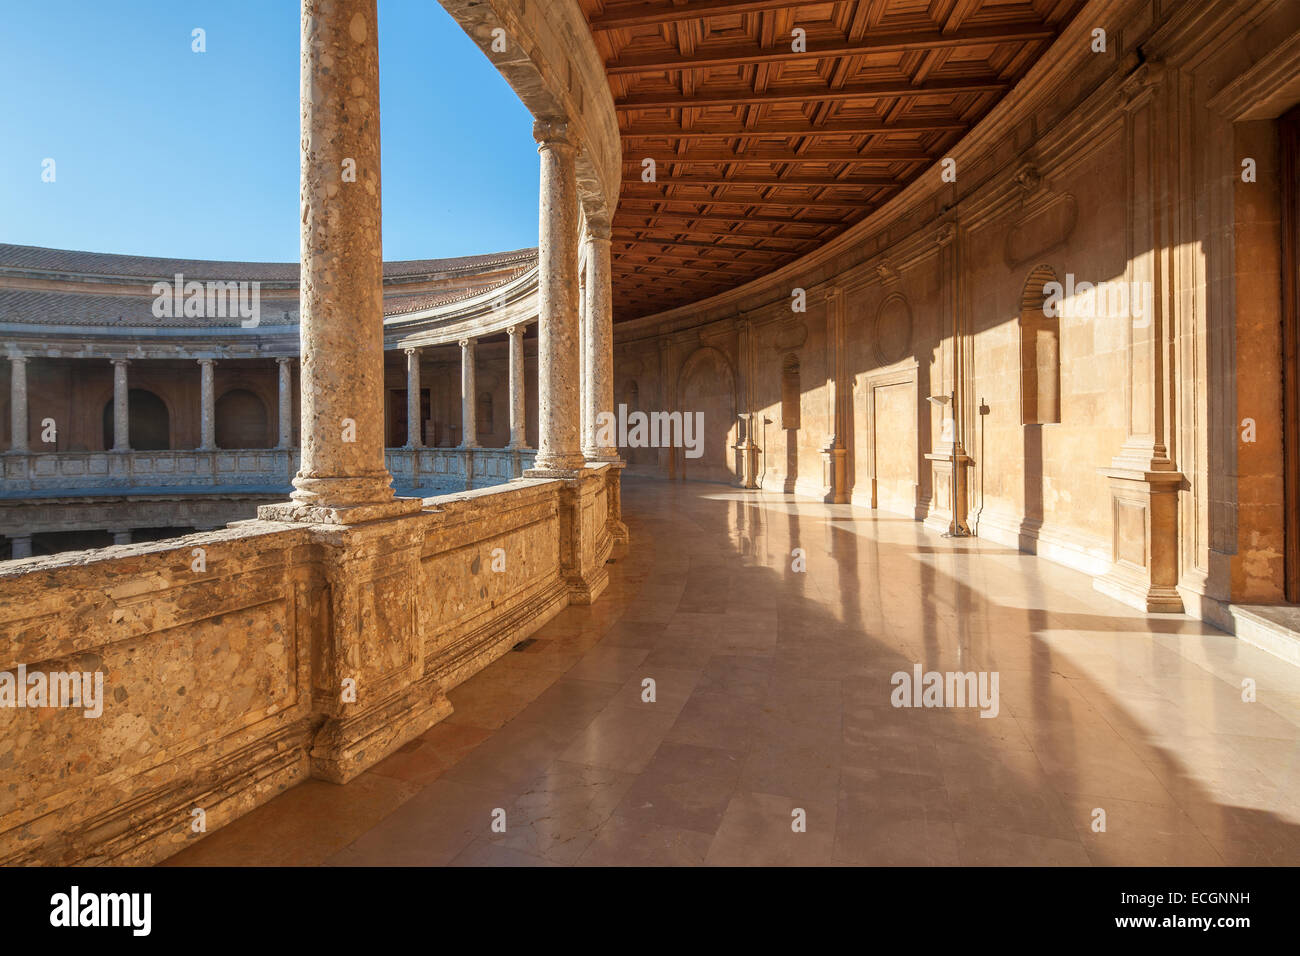 Palazzo rinascimentale del Sacro Romano Imperatore Carlo V nell'Alhambra Granada Spagna. Palacio Carlos V. circolare interna del cortile. Foto Stock